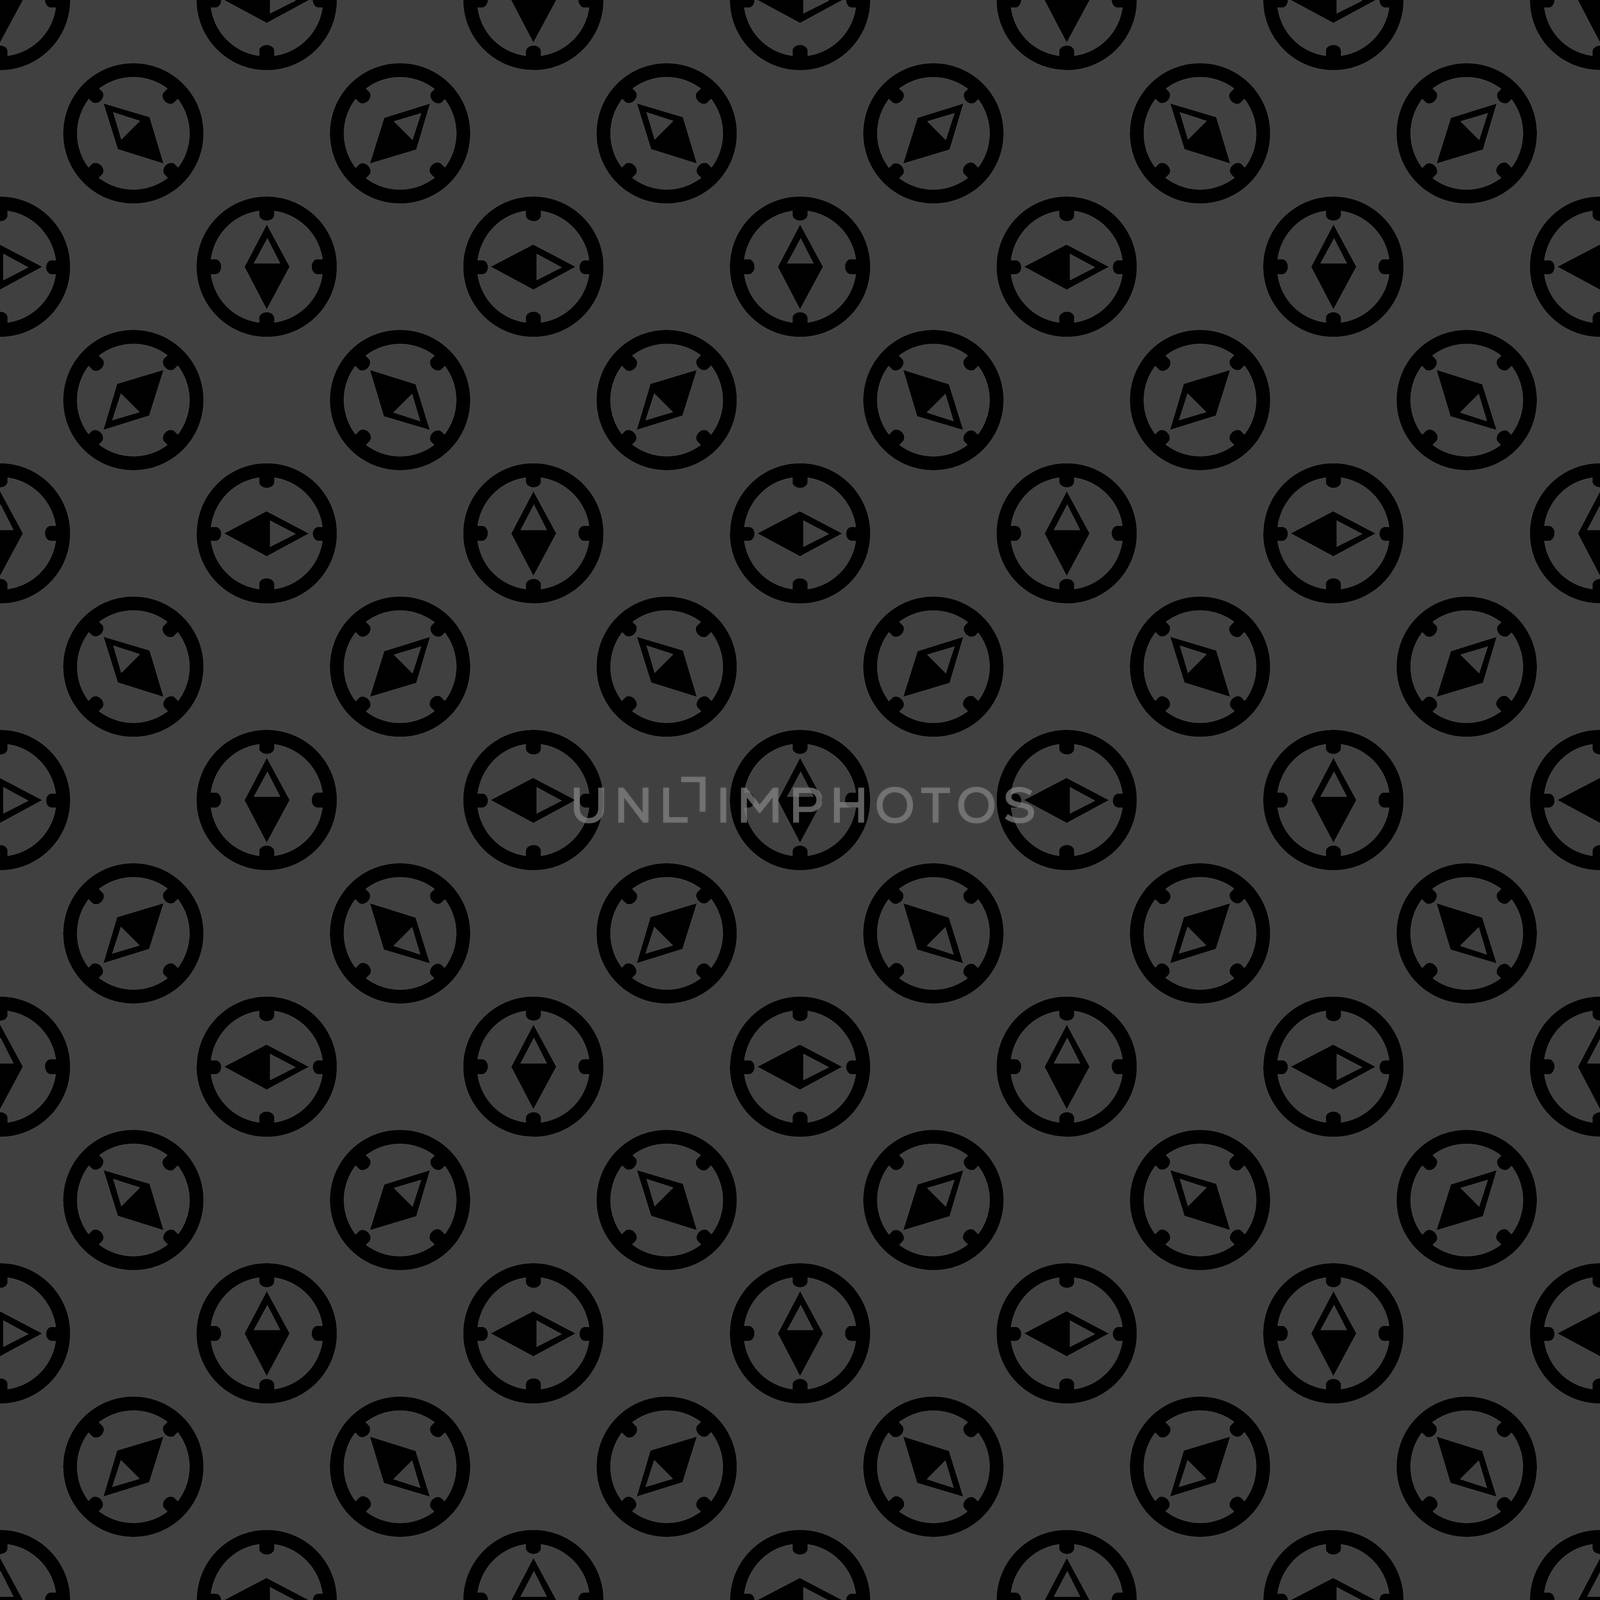 Compass web icon. flat design. Seamless gray pattern. by serhii_lohvyniuk